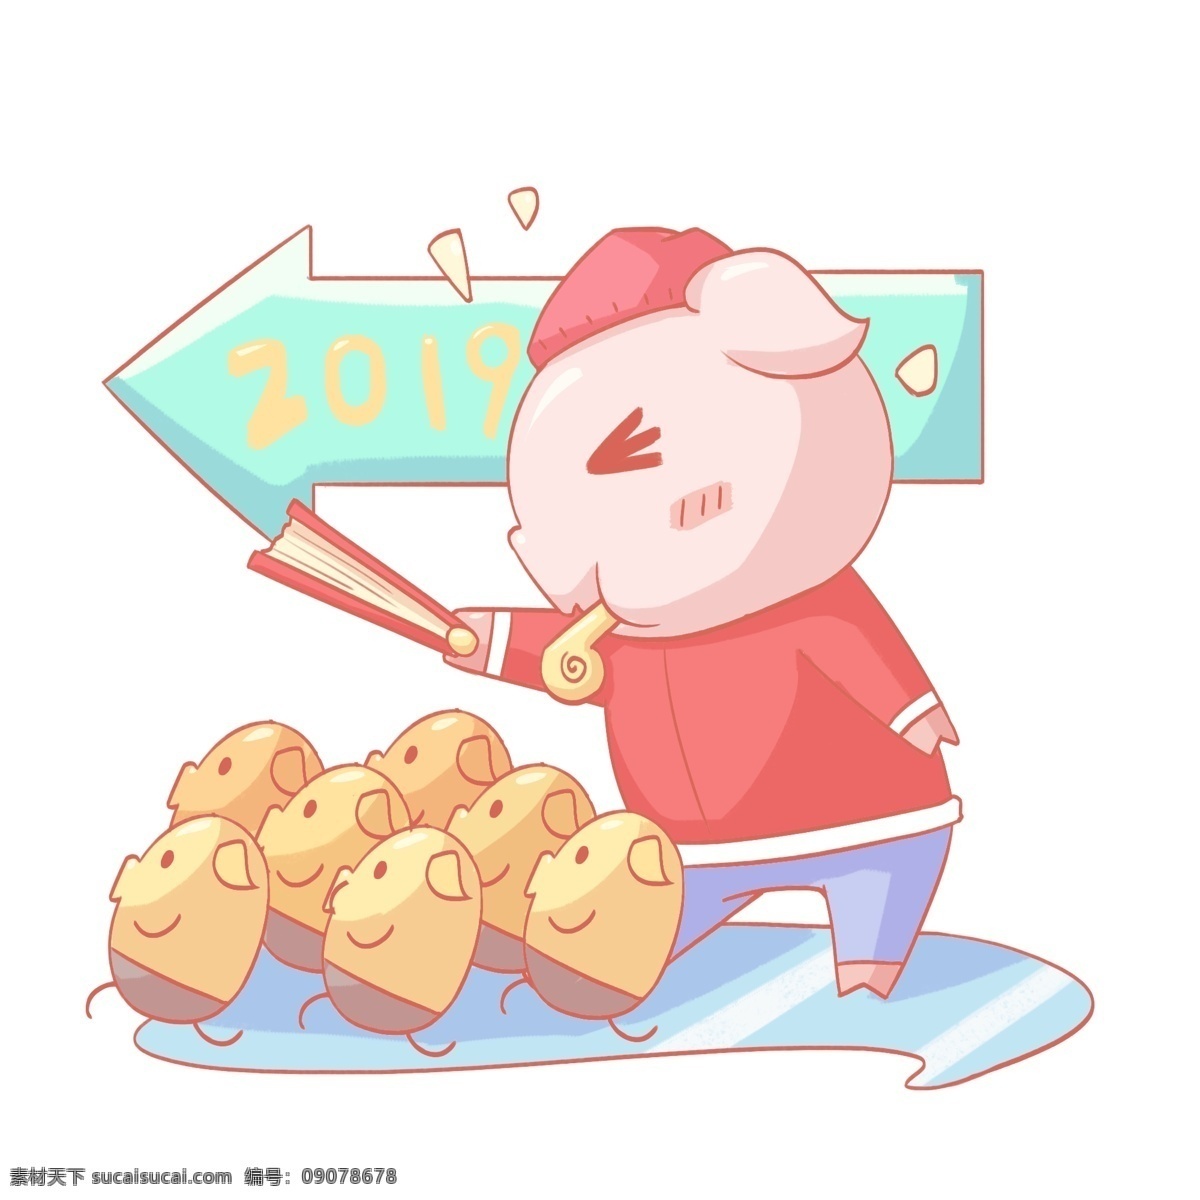 2019 农历 新年 进发 小 猪 指挥 人物 猪年大吉 小猪 吹哨 新年快乐 卡通手绘风格 向新年进发